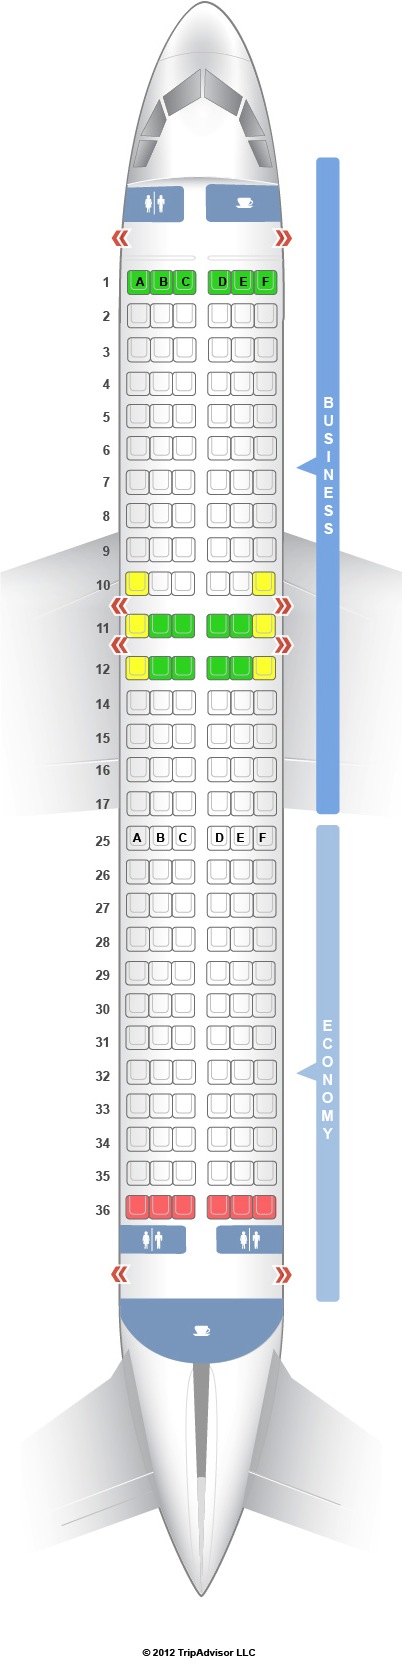 Swissair A330 Seat Map